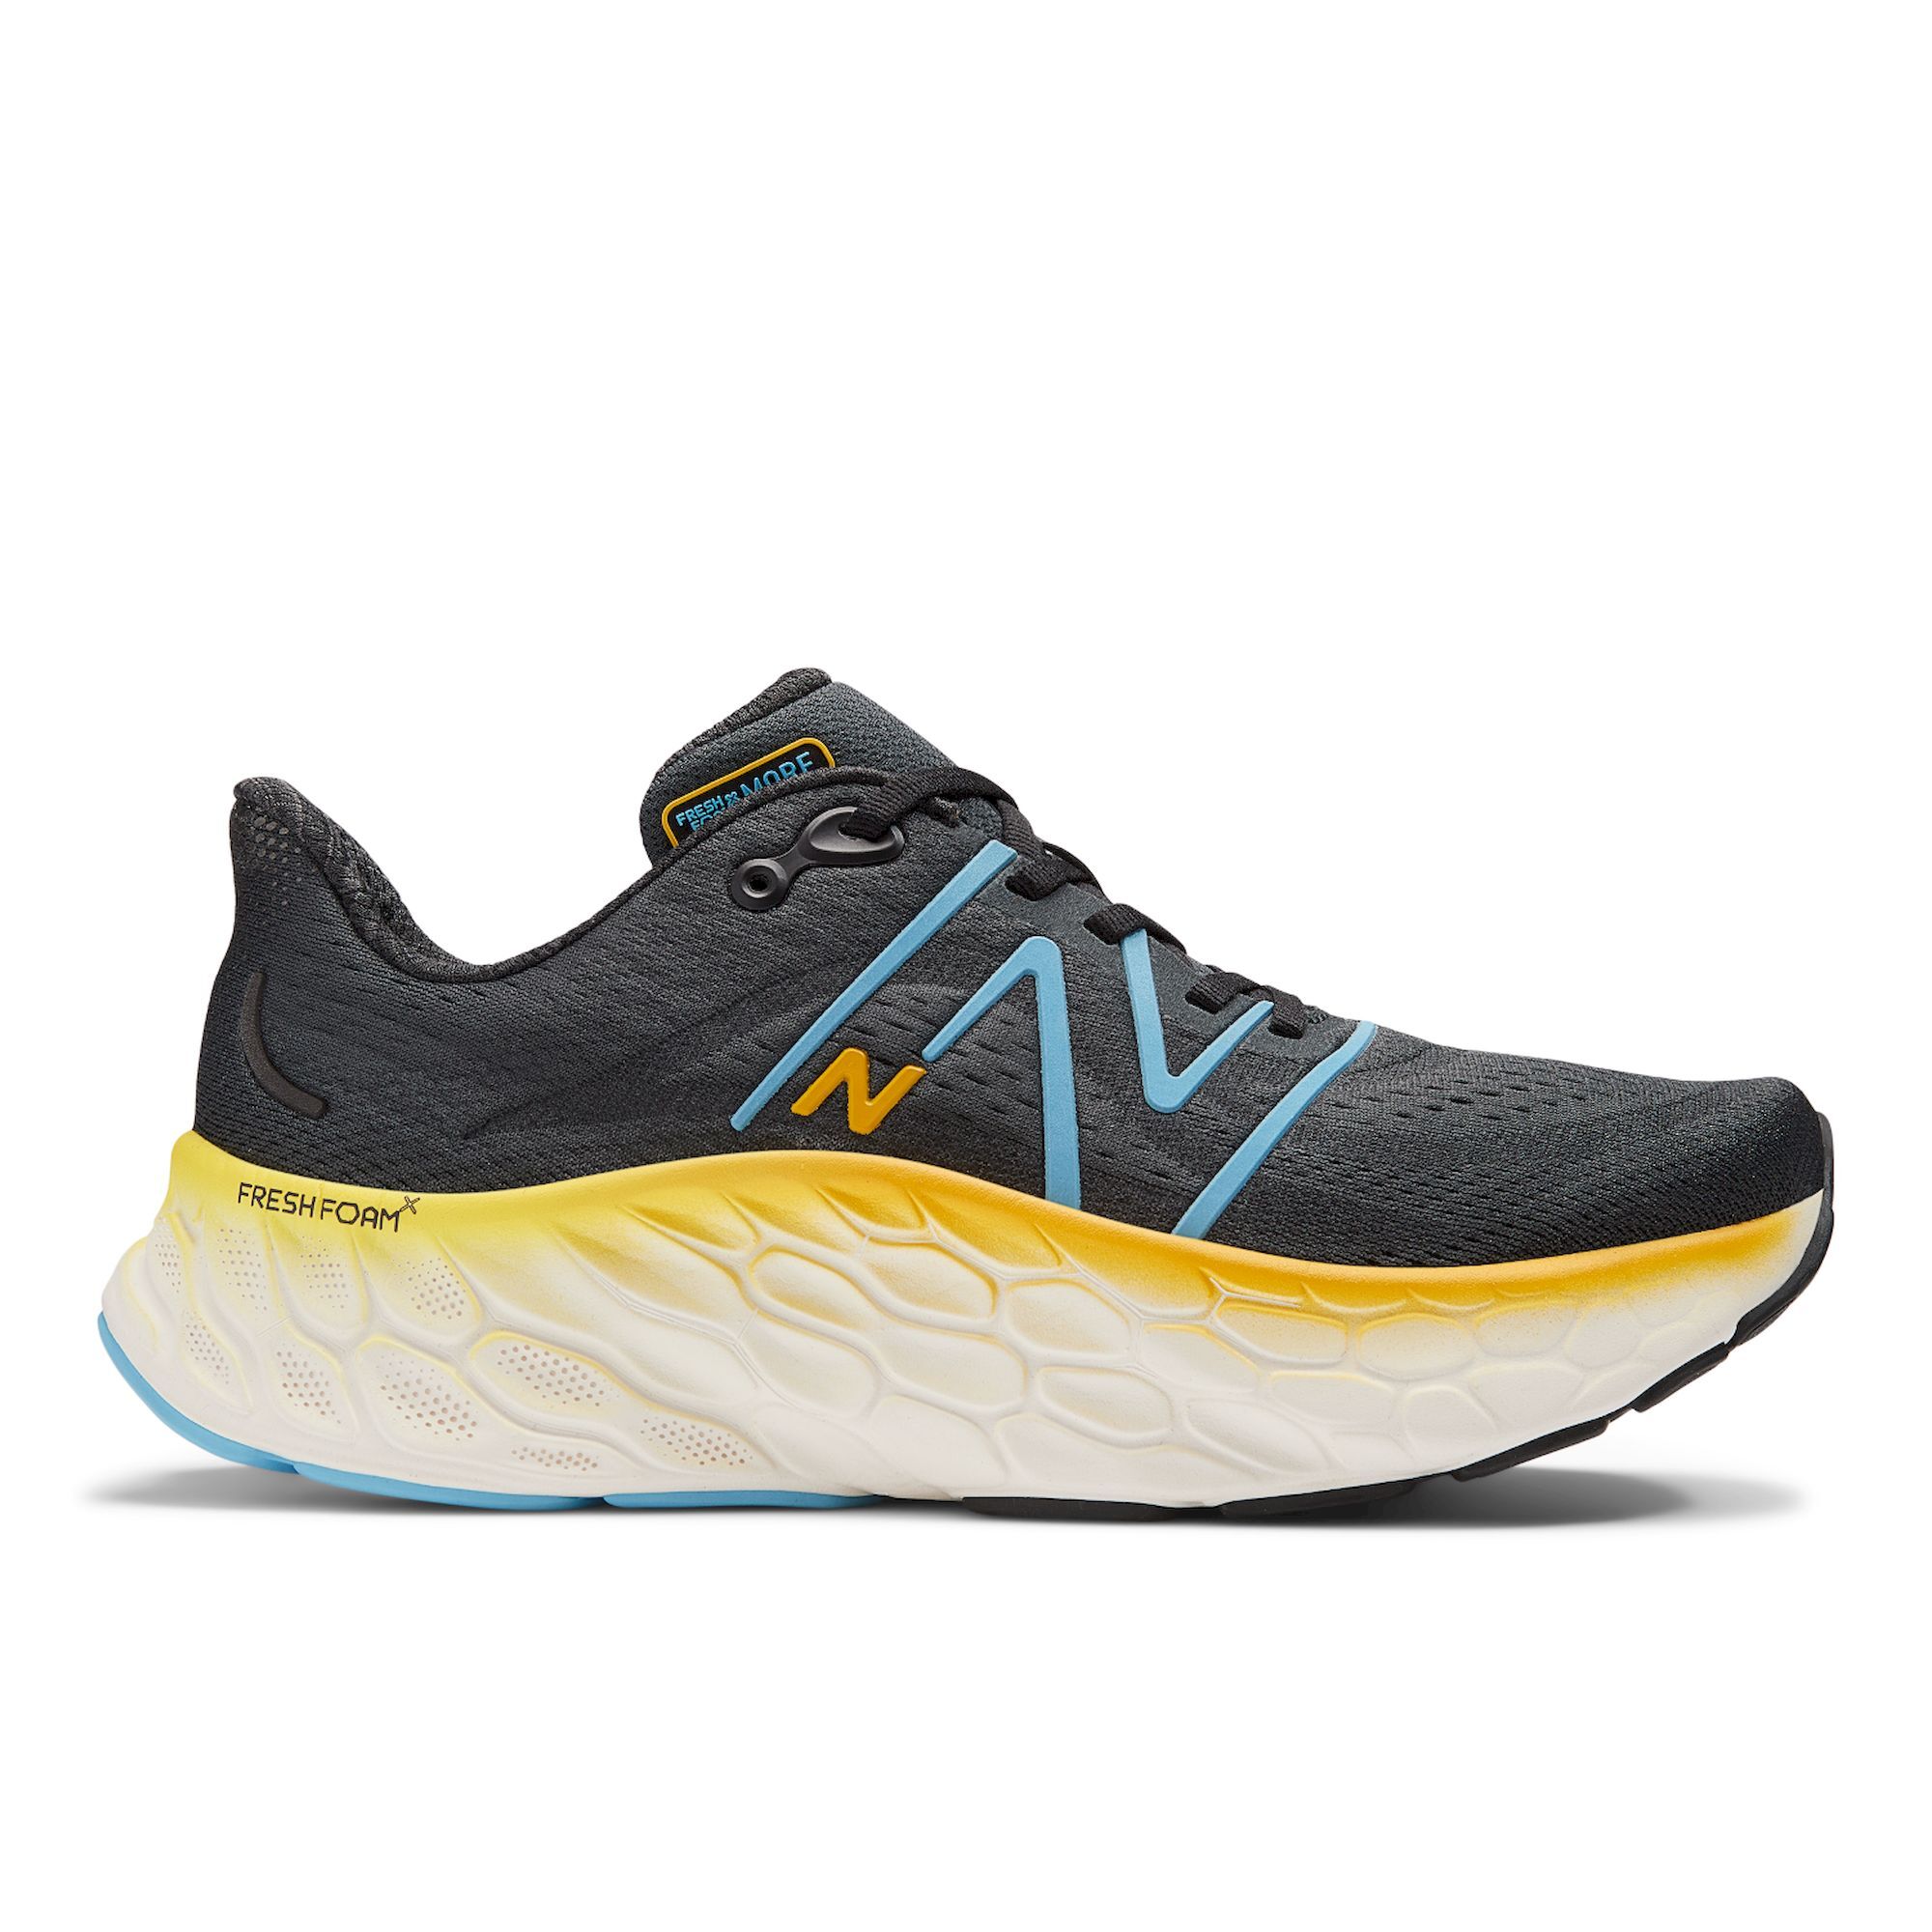 New Balance Fresh Foam More V4 - Running shoes - Men's